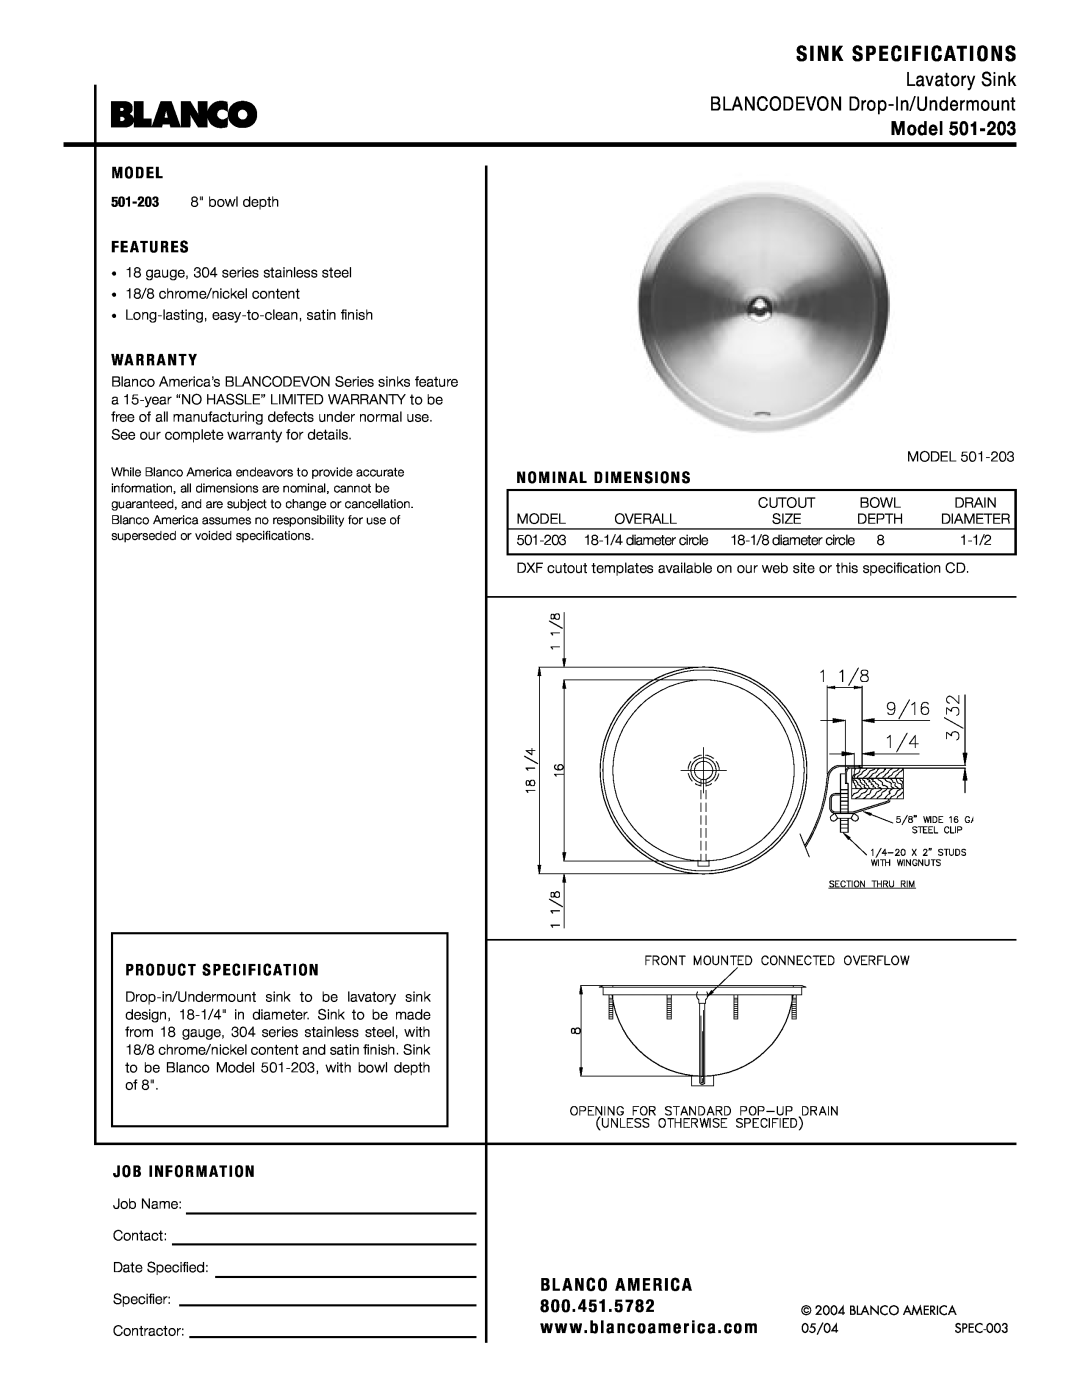 Blanco 501-203 warranty Sink Specifications, Lavatory Sink BLANCODEVON Drop-In/Undermount, Model, Bl Anco America, 8 0 